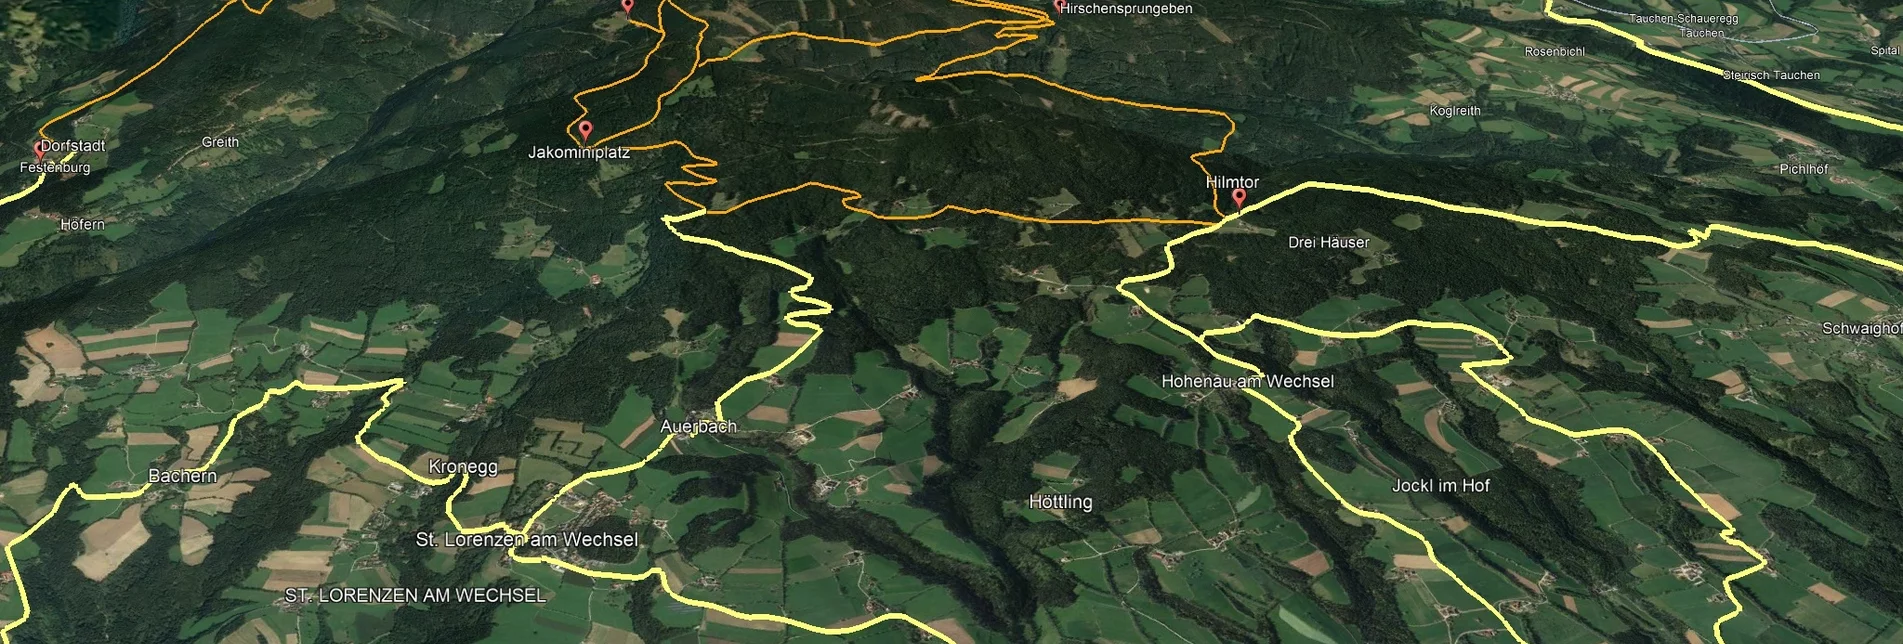 Mountainbike VORSCHAU Steirische Wexl Trails - Thalberger Schwaig Route - Touren-Impression #1 | © Verein Tourismusentwicklung Steirischer Wechsel